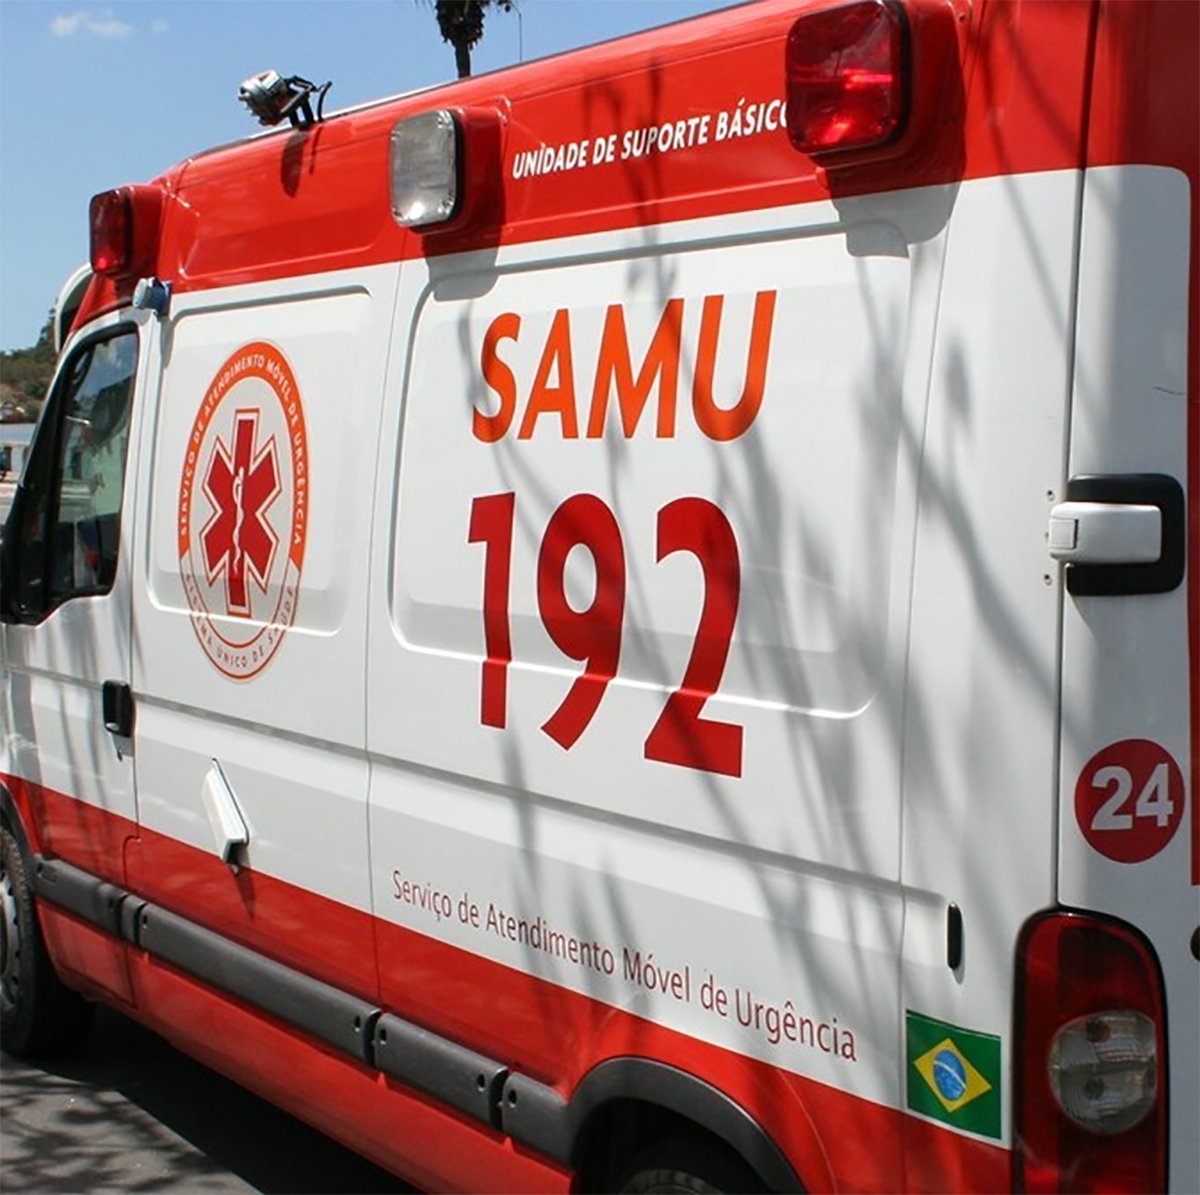 Em publicação, Samu 192 do Espírito Santo orienta que a população acione outros canais enquanto equipes trabalham para reestabelecer o serviço